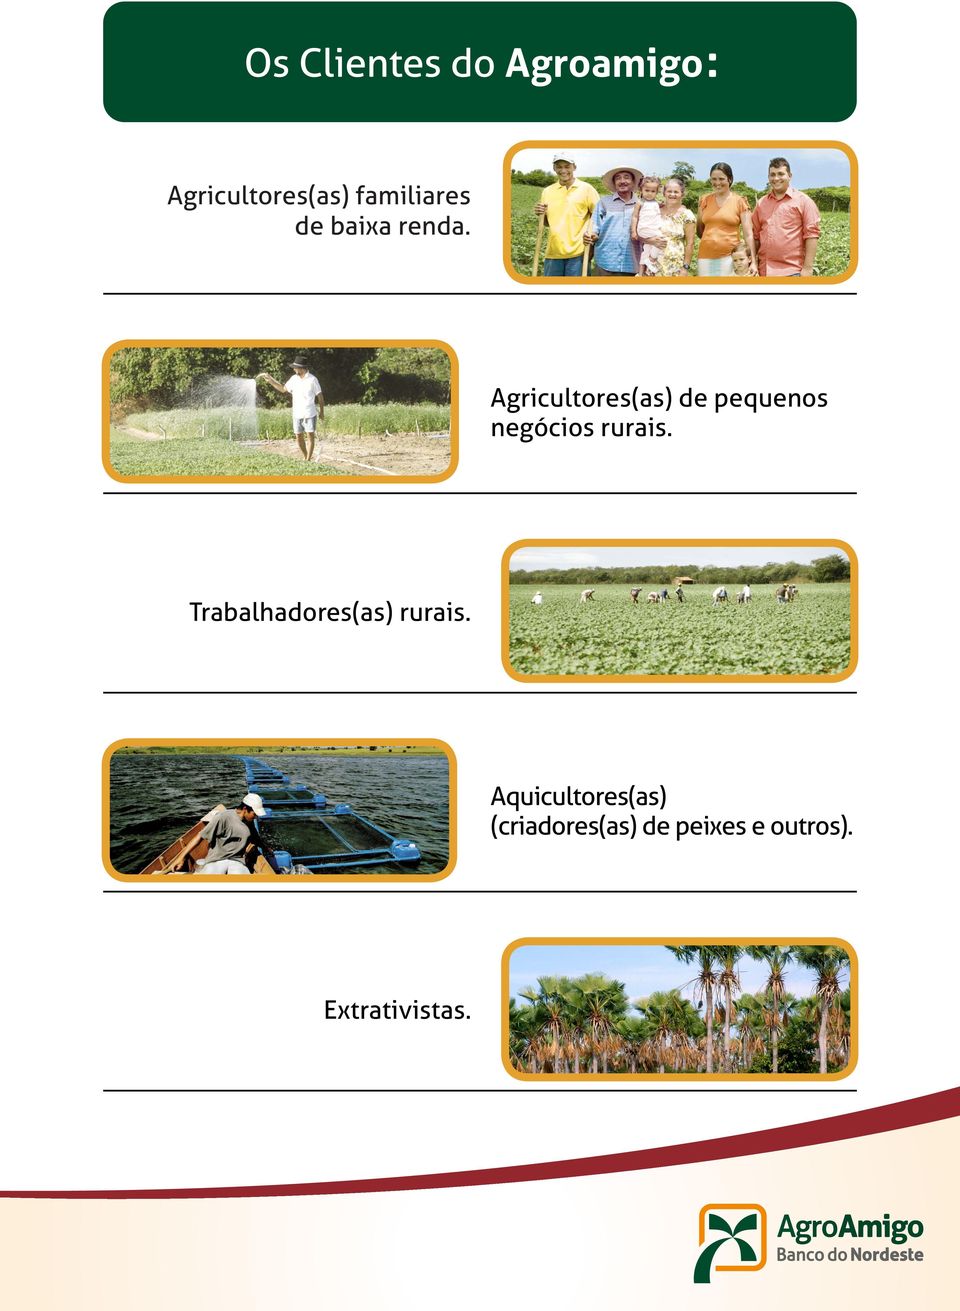 Agricultores(as) de pequenos negócios rurais.